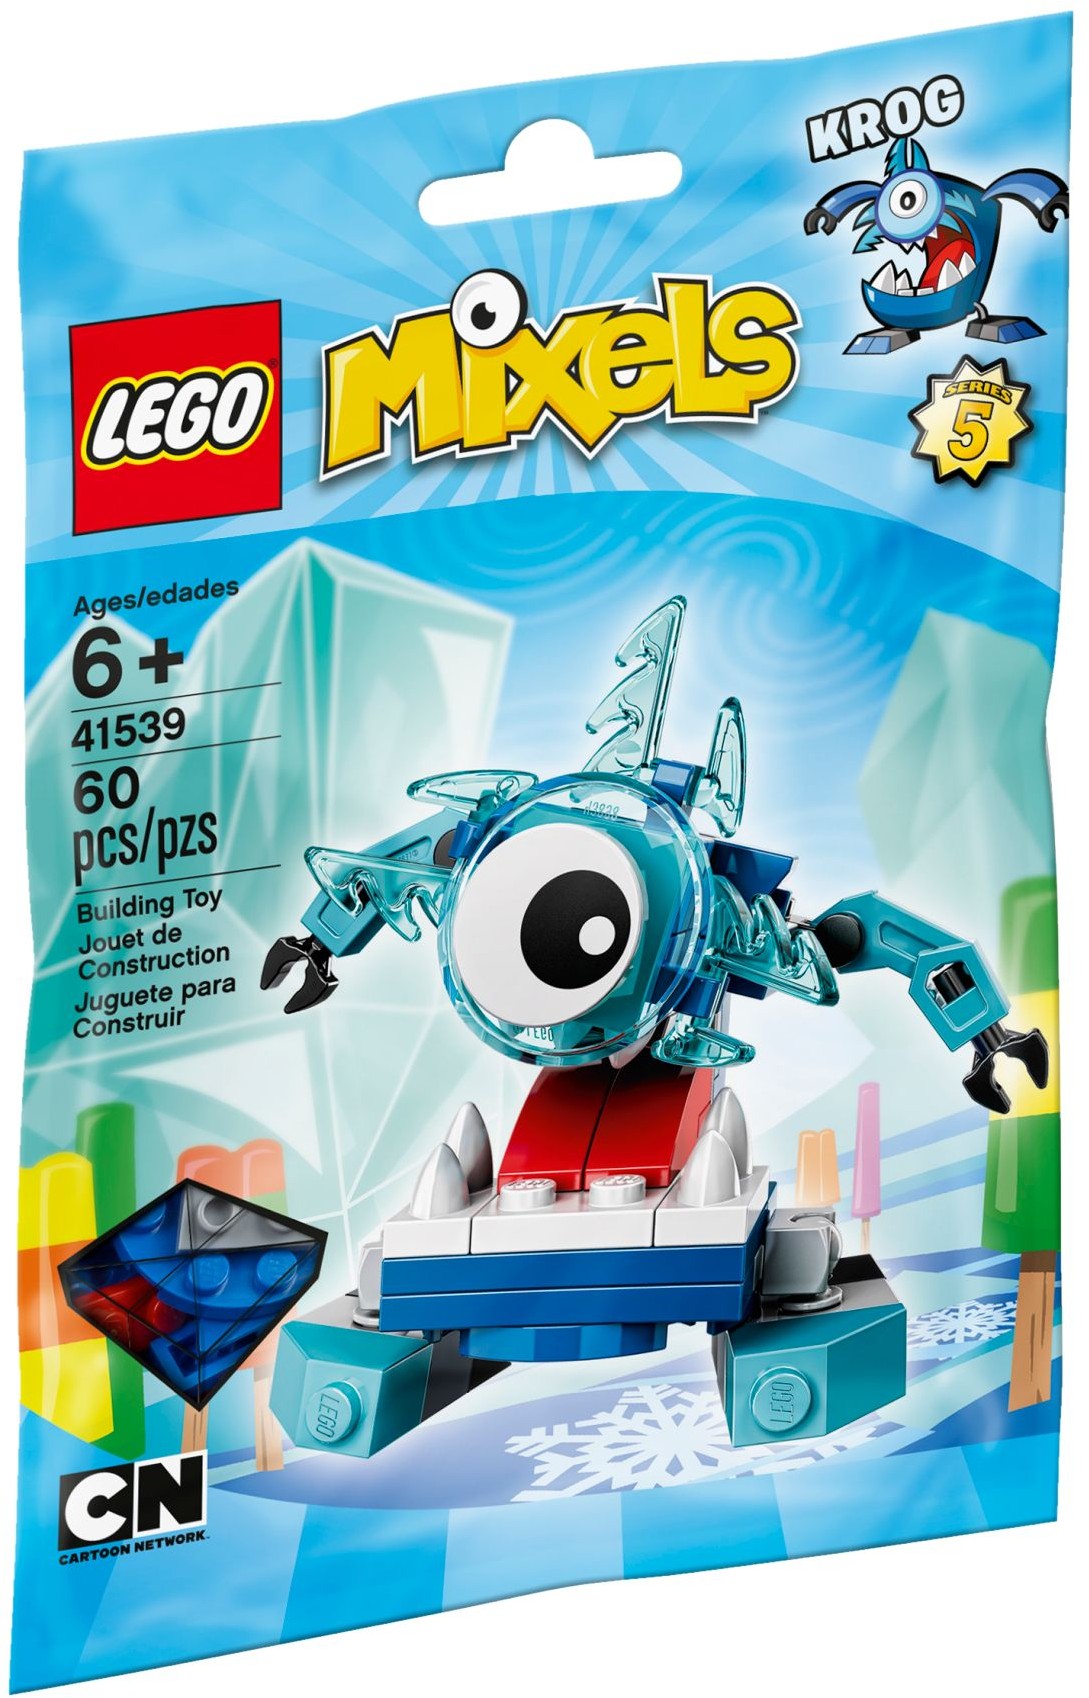 Lego Mixels Krog 6+ ani